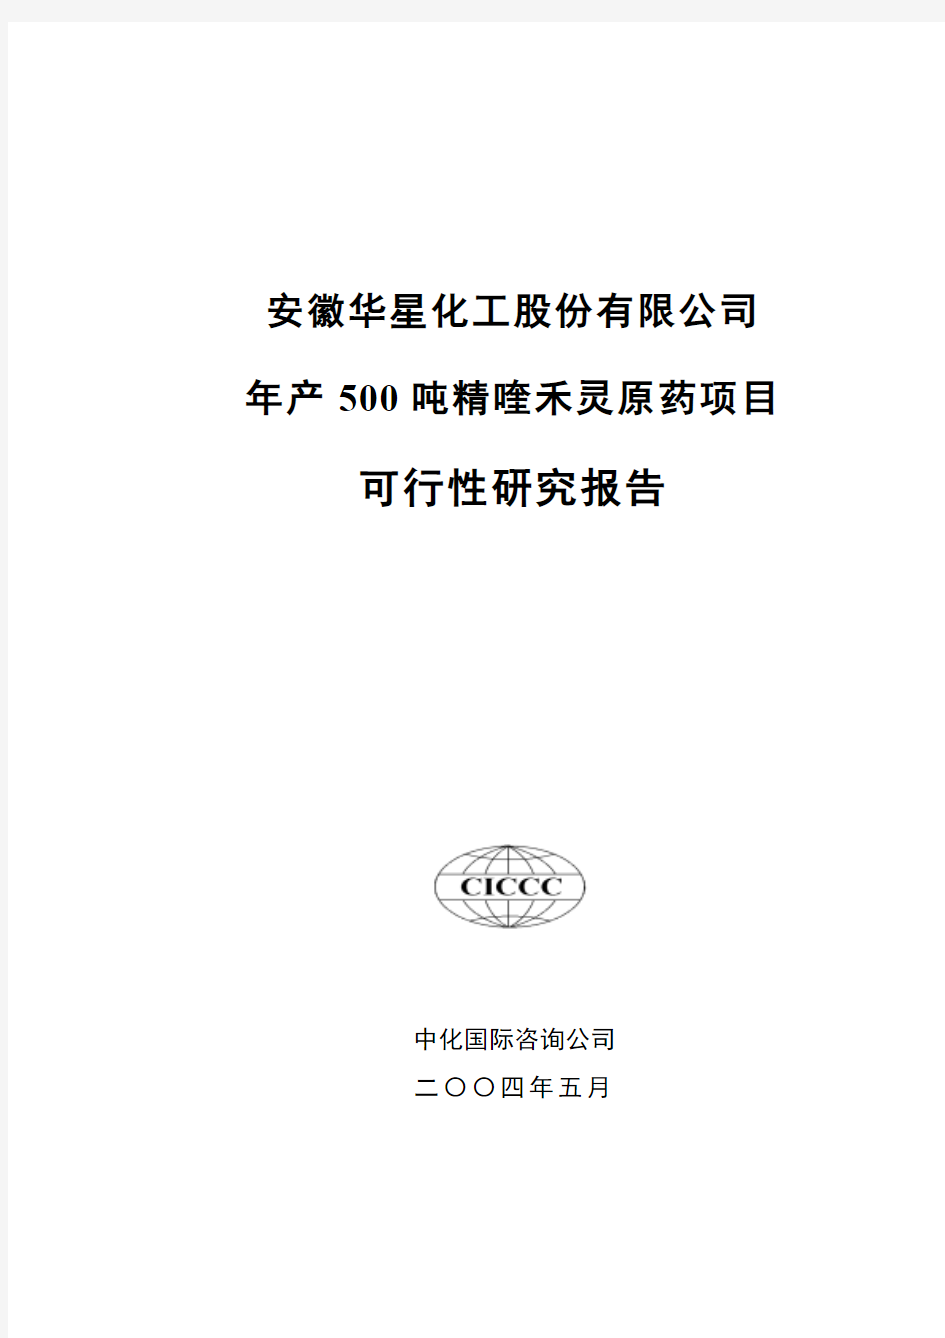 安徽华星化工股份有限公司 年产 500 吨精喹禾灵原药项目